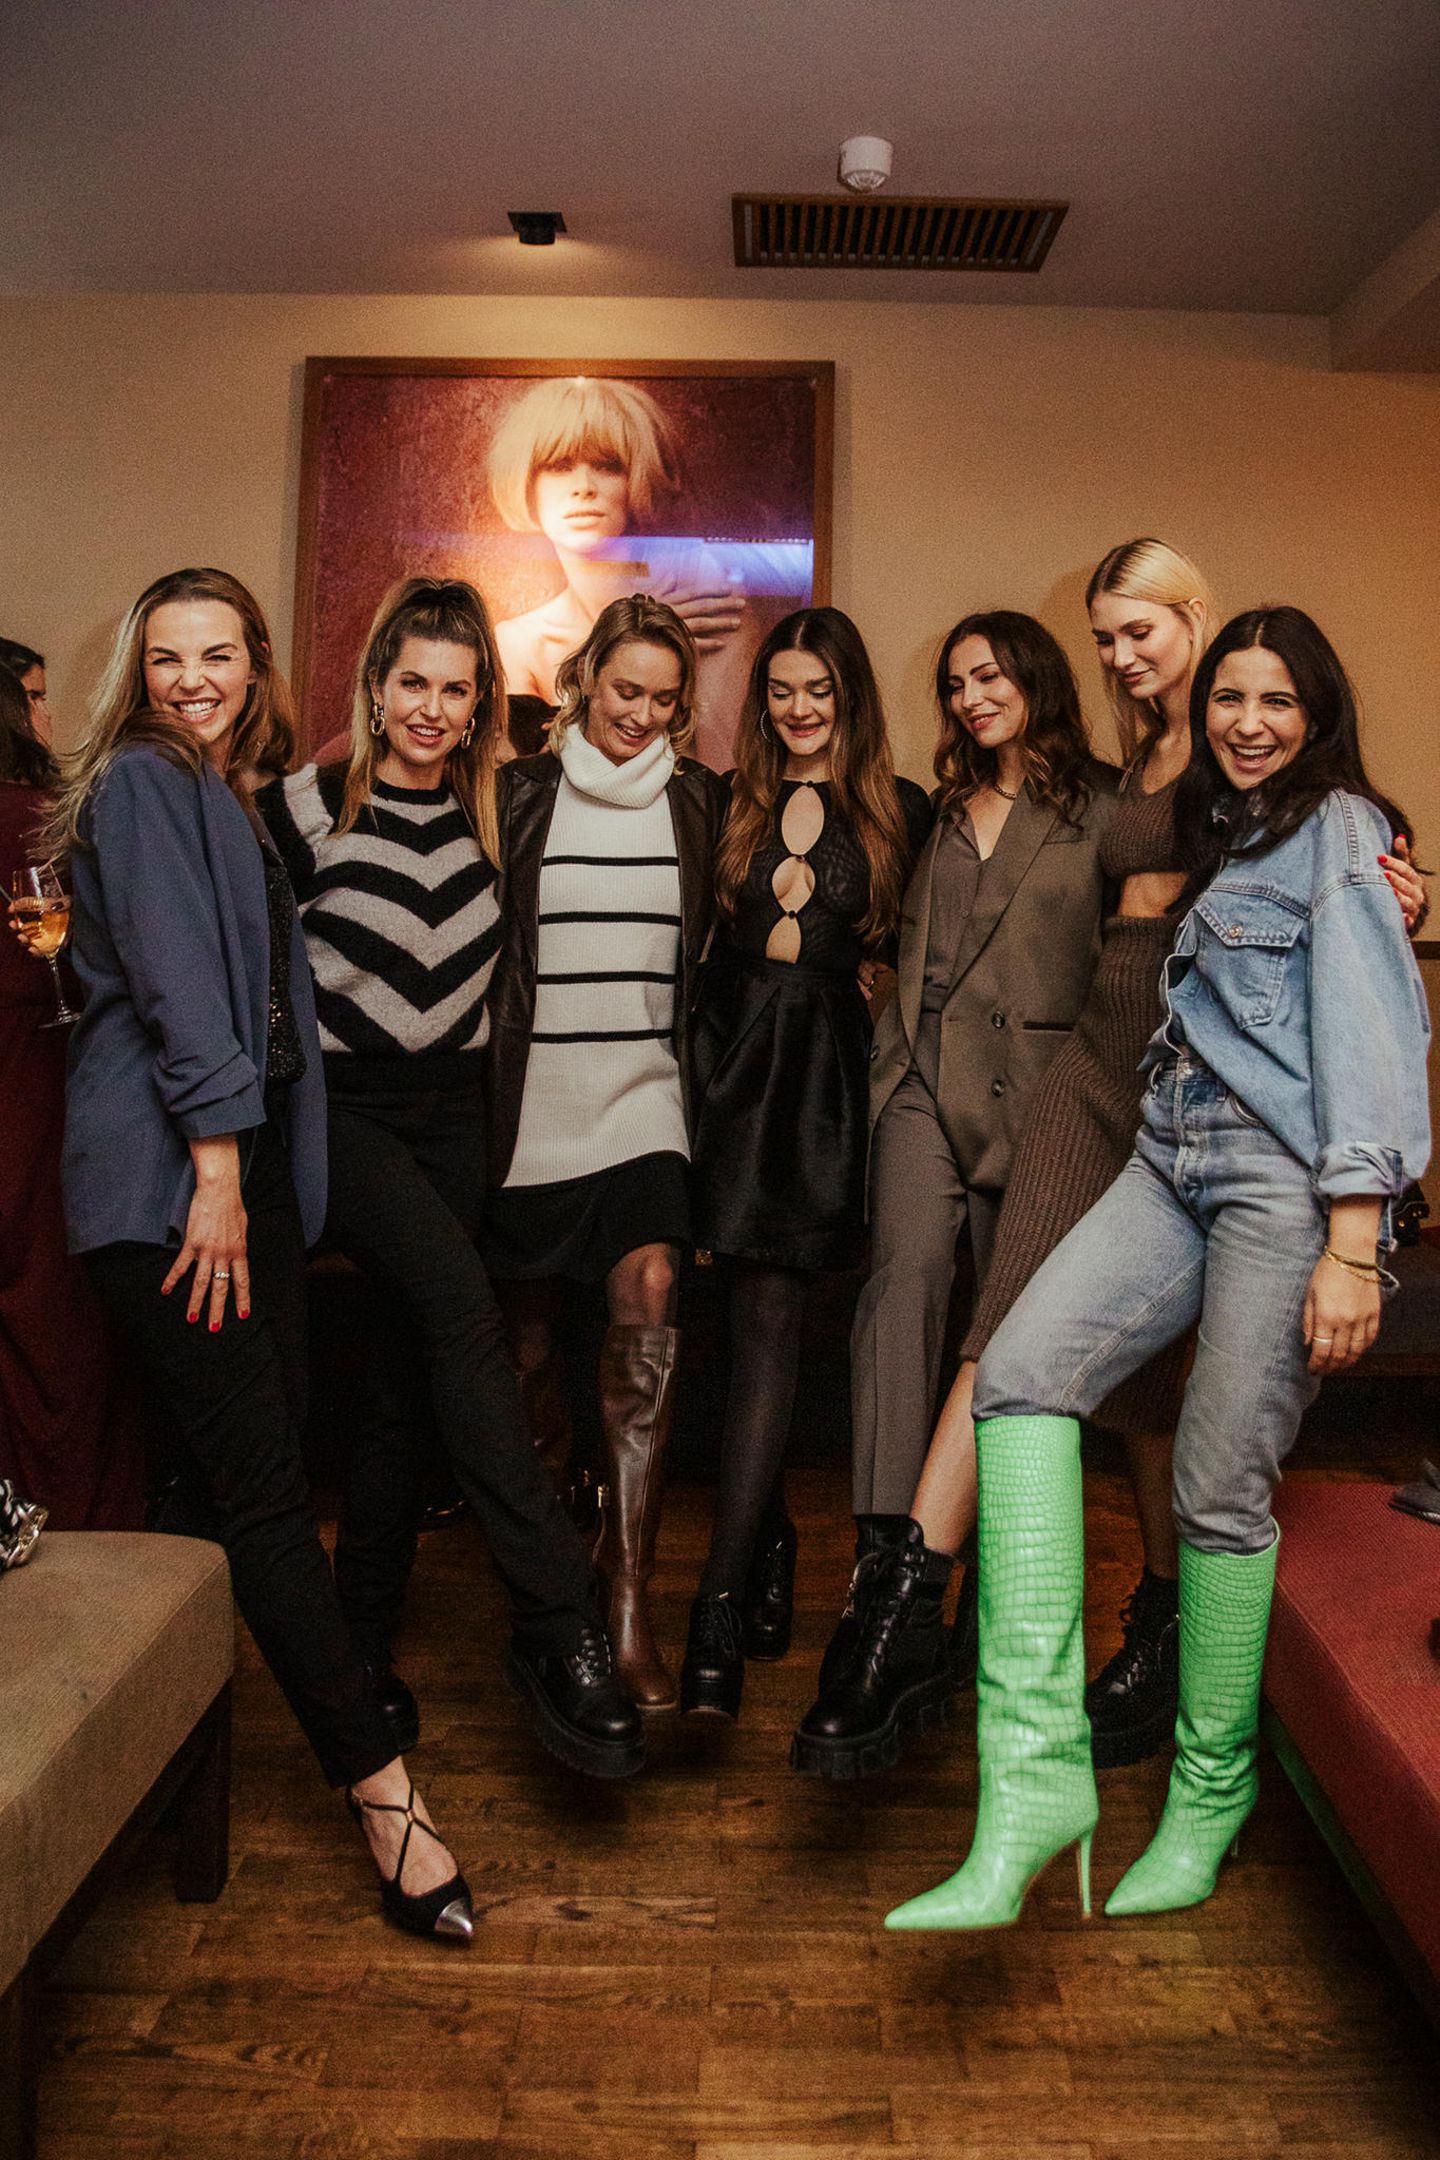 Tolle Stimmung und Schuhvergleiche: Annika Lau, Ines Anioli, Caro Cult, Emily Roberts, Masha Sedgwick, Carolin Niemczyk und Chryssanthi Kavazi genießen das "Frauen30"-Event gemeinsam.